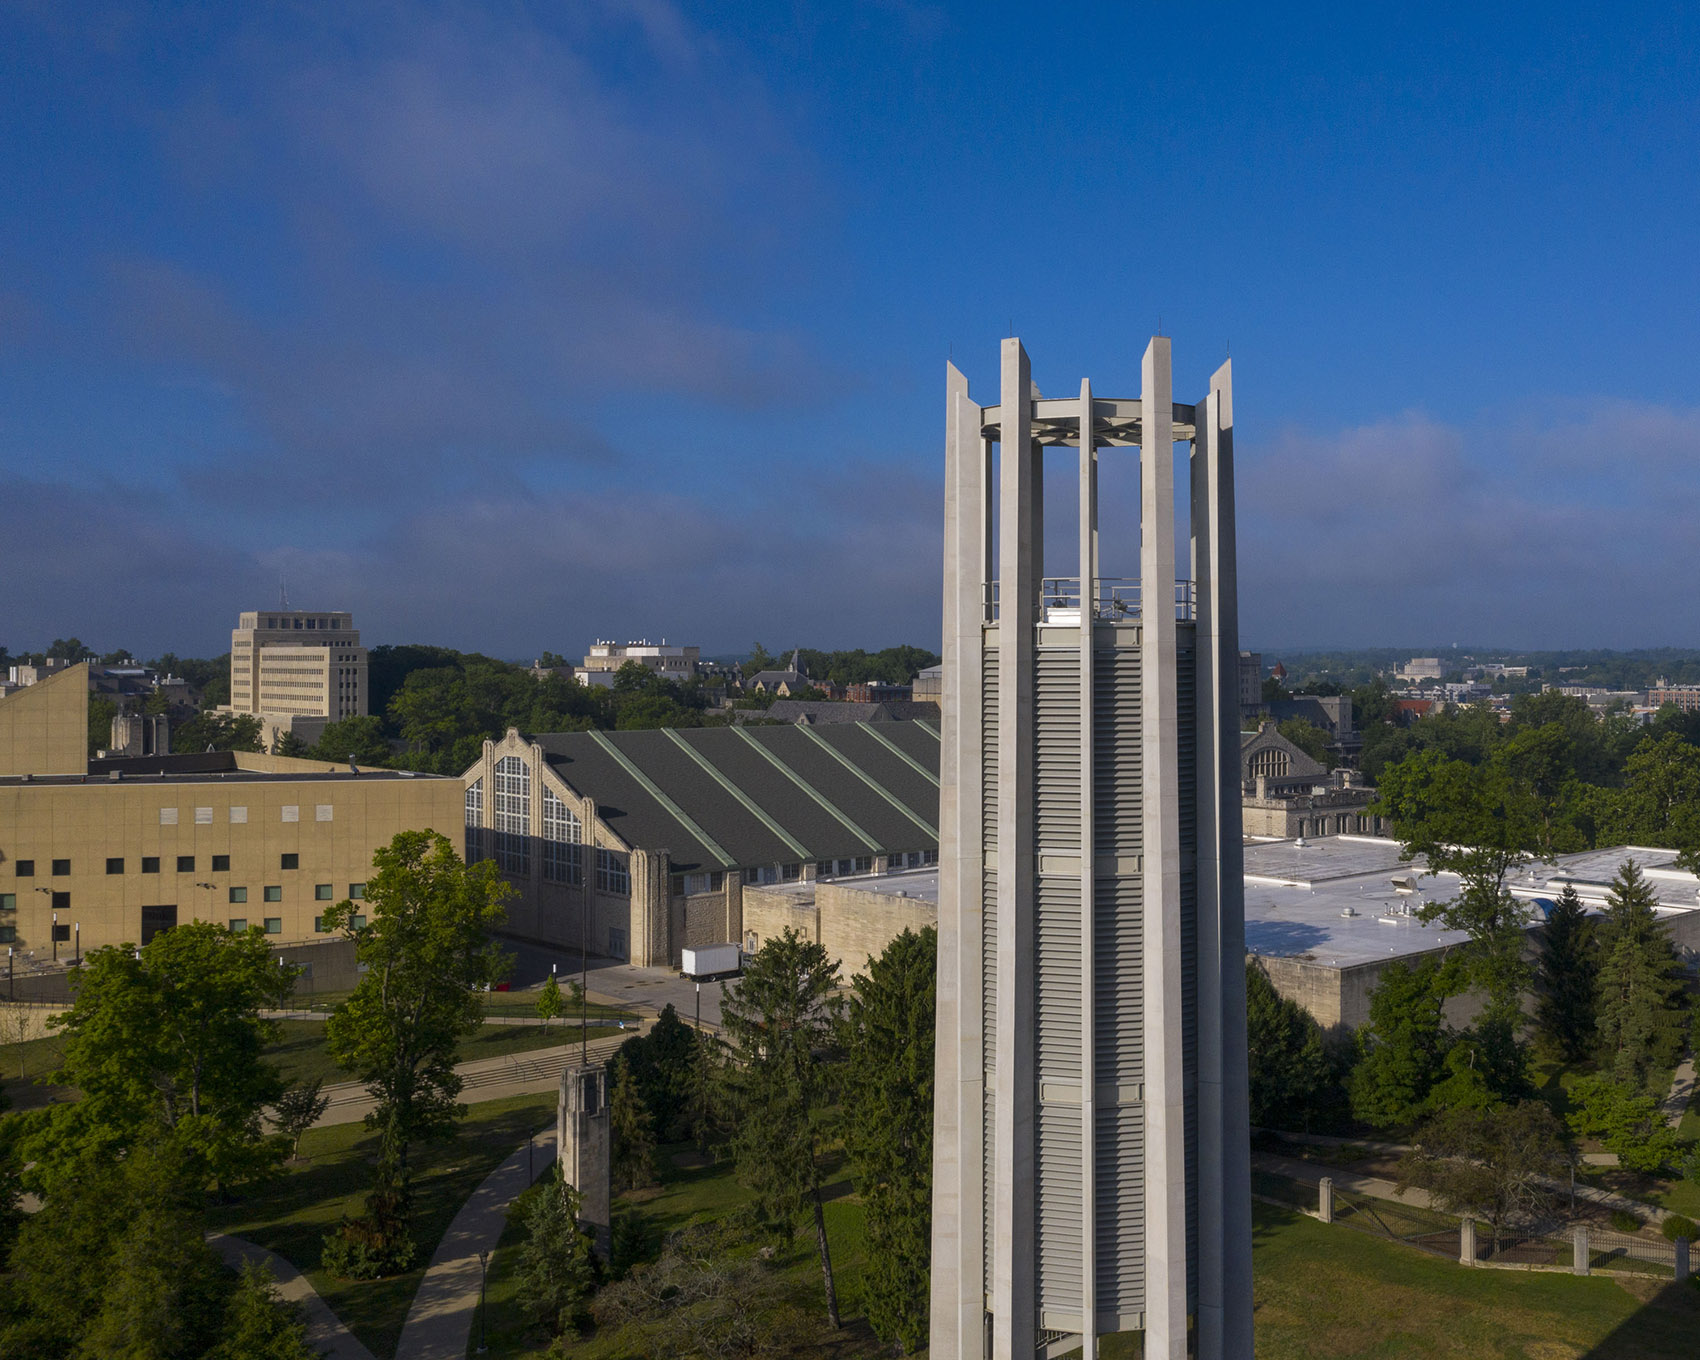 印第安纳大学钟琴塔，美国/印第安纳大学两百周年校庆的纪念钟塔-31